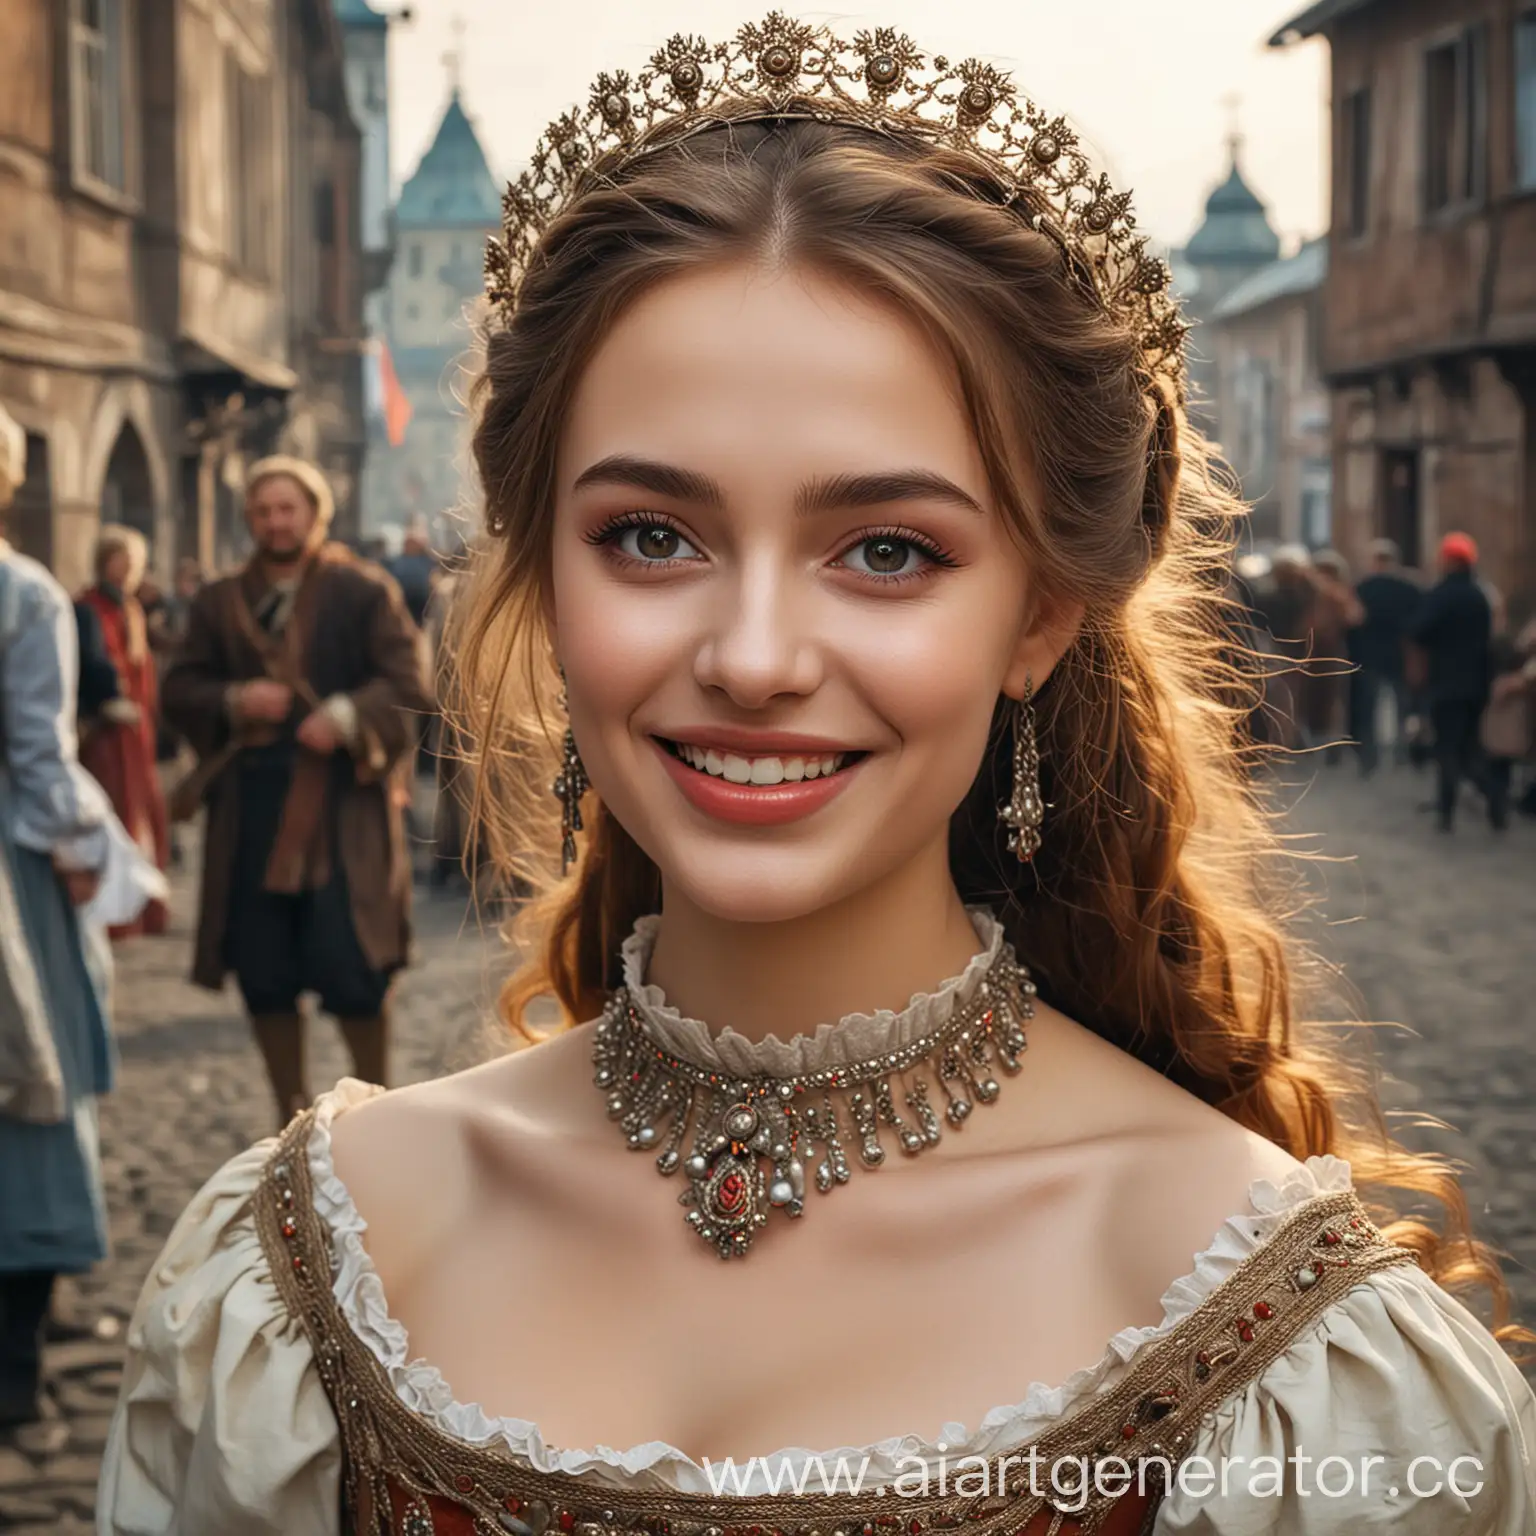 Joyful-Maiden-Amidst-16thCentury-Russian-Turmoil-Portrait-of-Beauty-in-Times-of-Strife